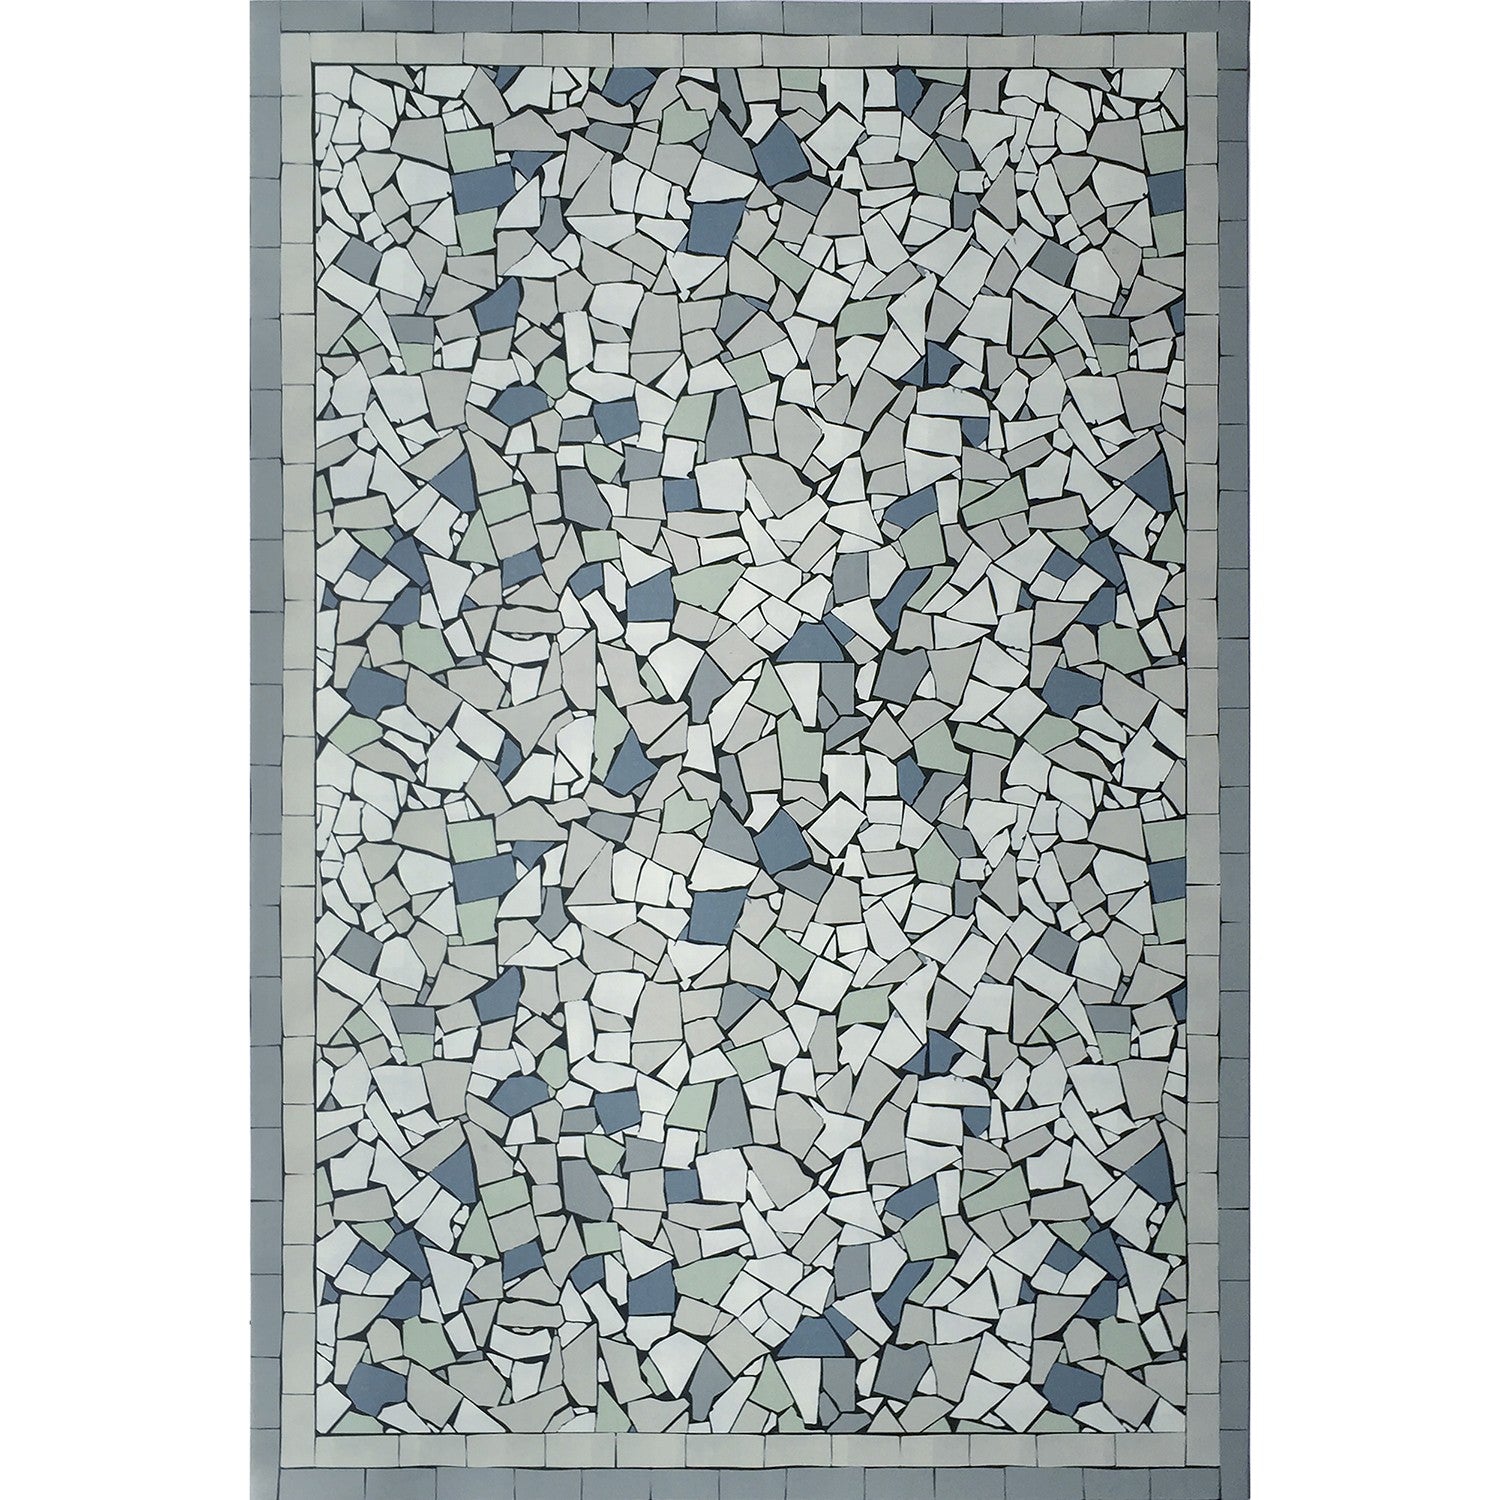 Mosaique Sicilia vinyl rug